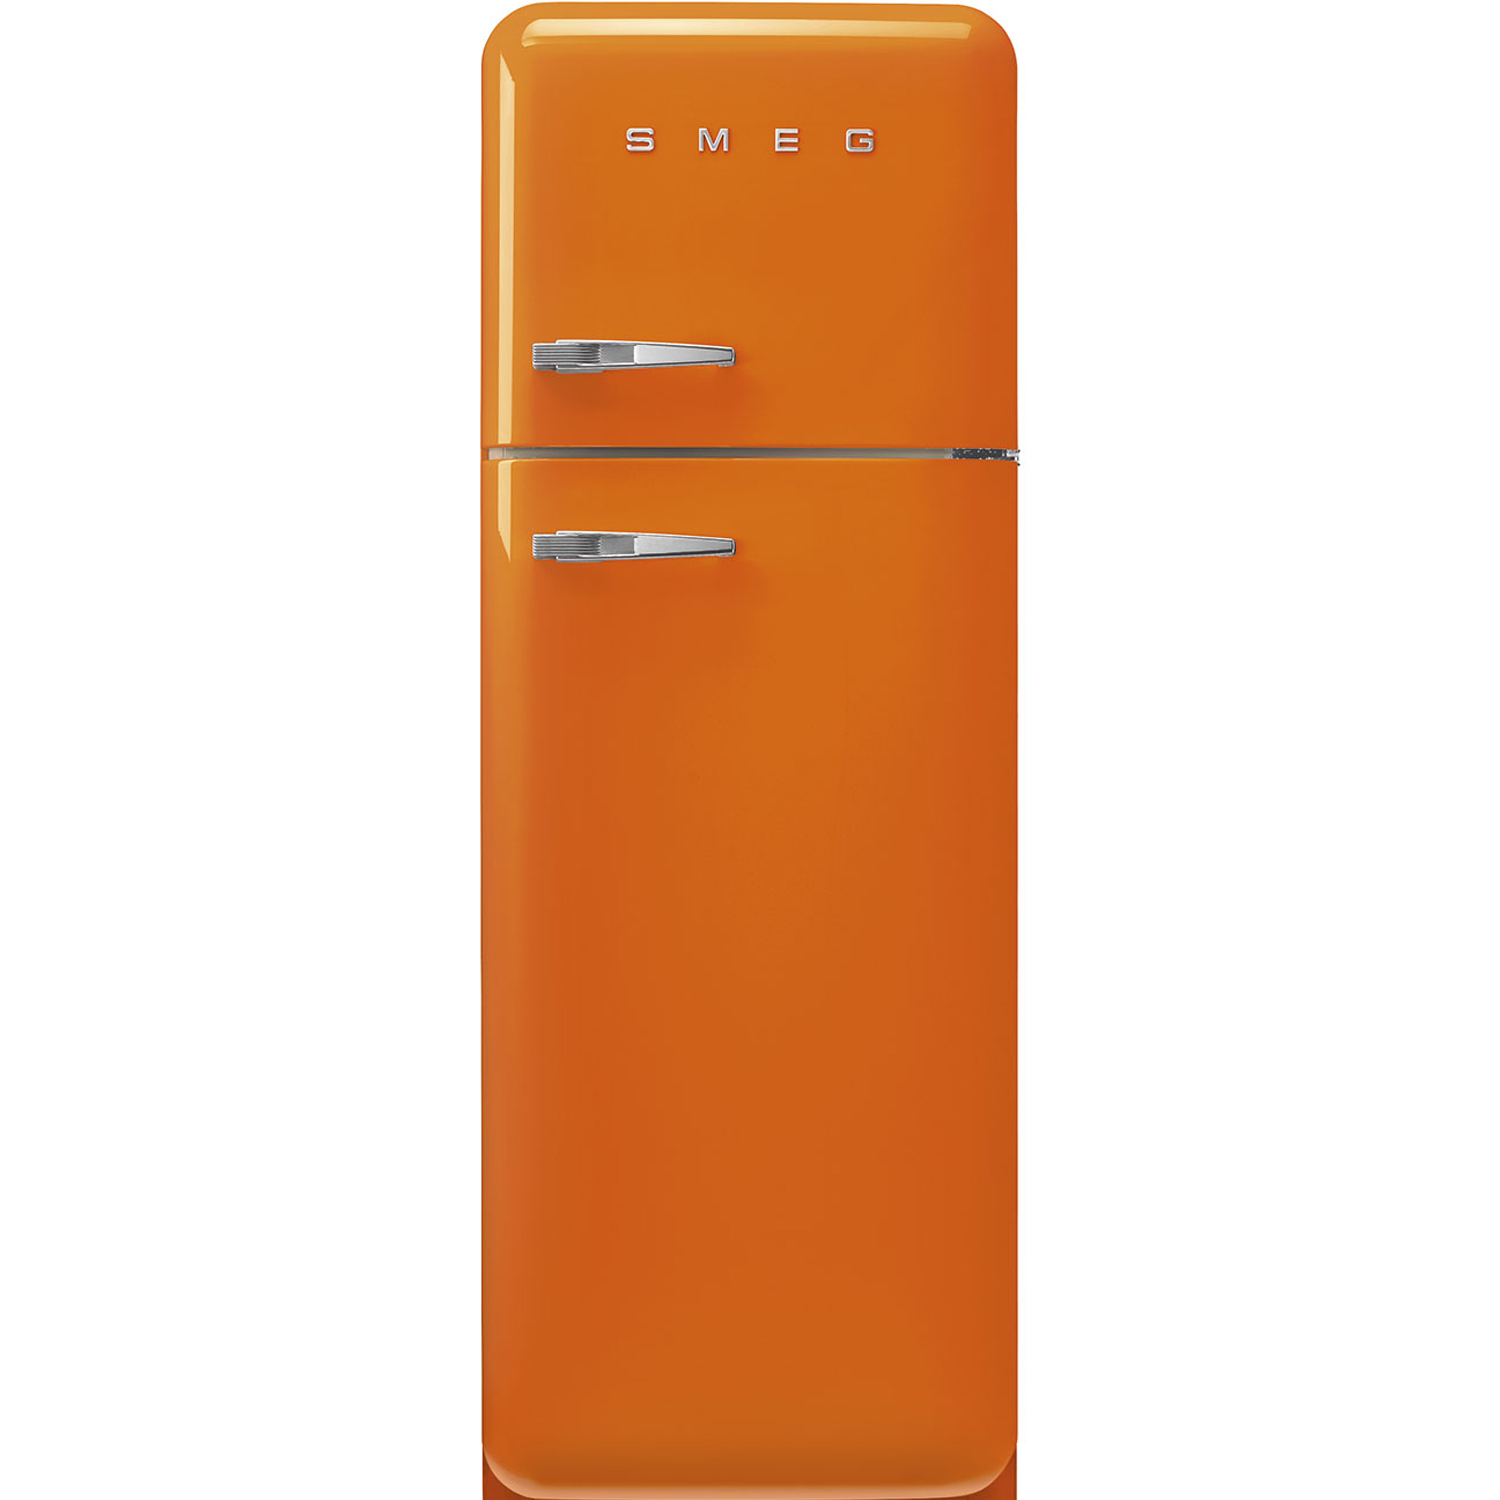 Купить холодильник в ярославле недорого. Холодильник Smeg fab32lrd5. Холодильник Smeg fab30rpb5. Холодильник Smeg Fab 28rdmm5. Холодильники Smeg fab10lcr2.